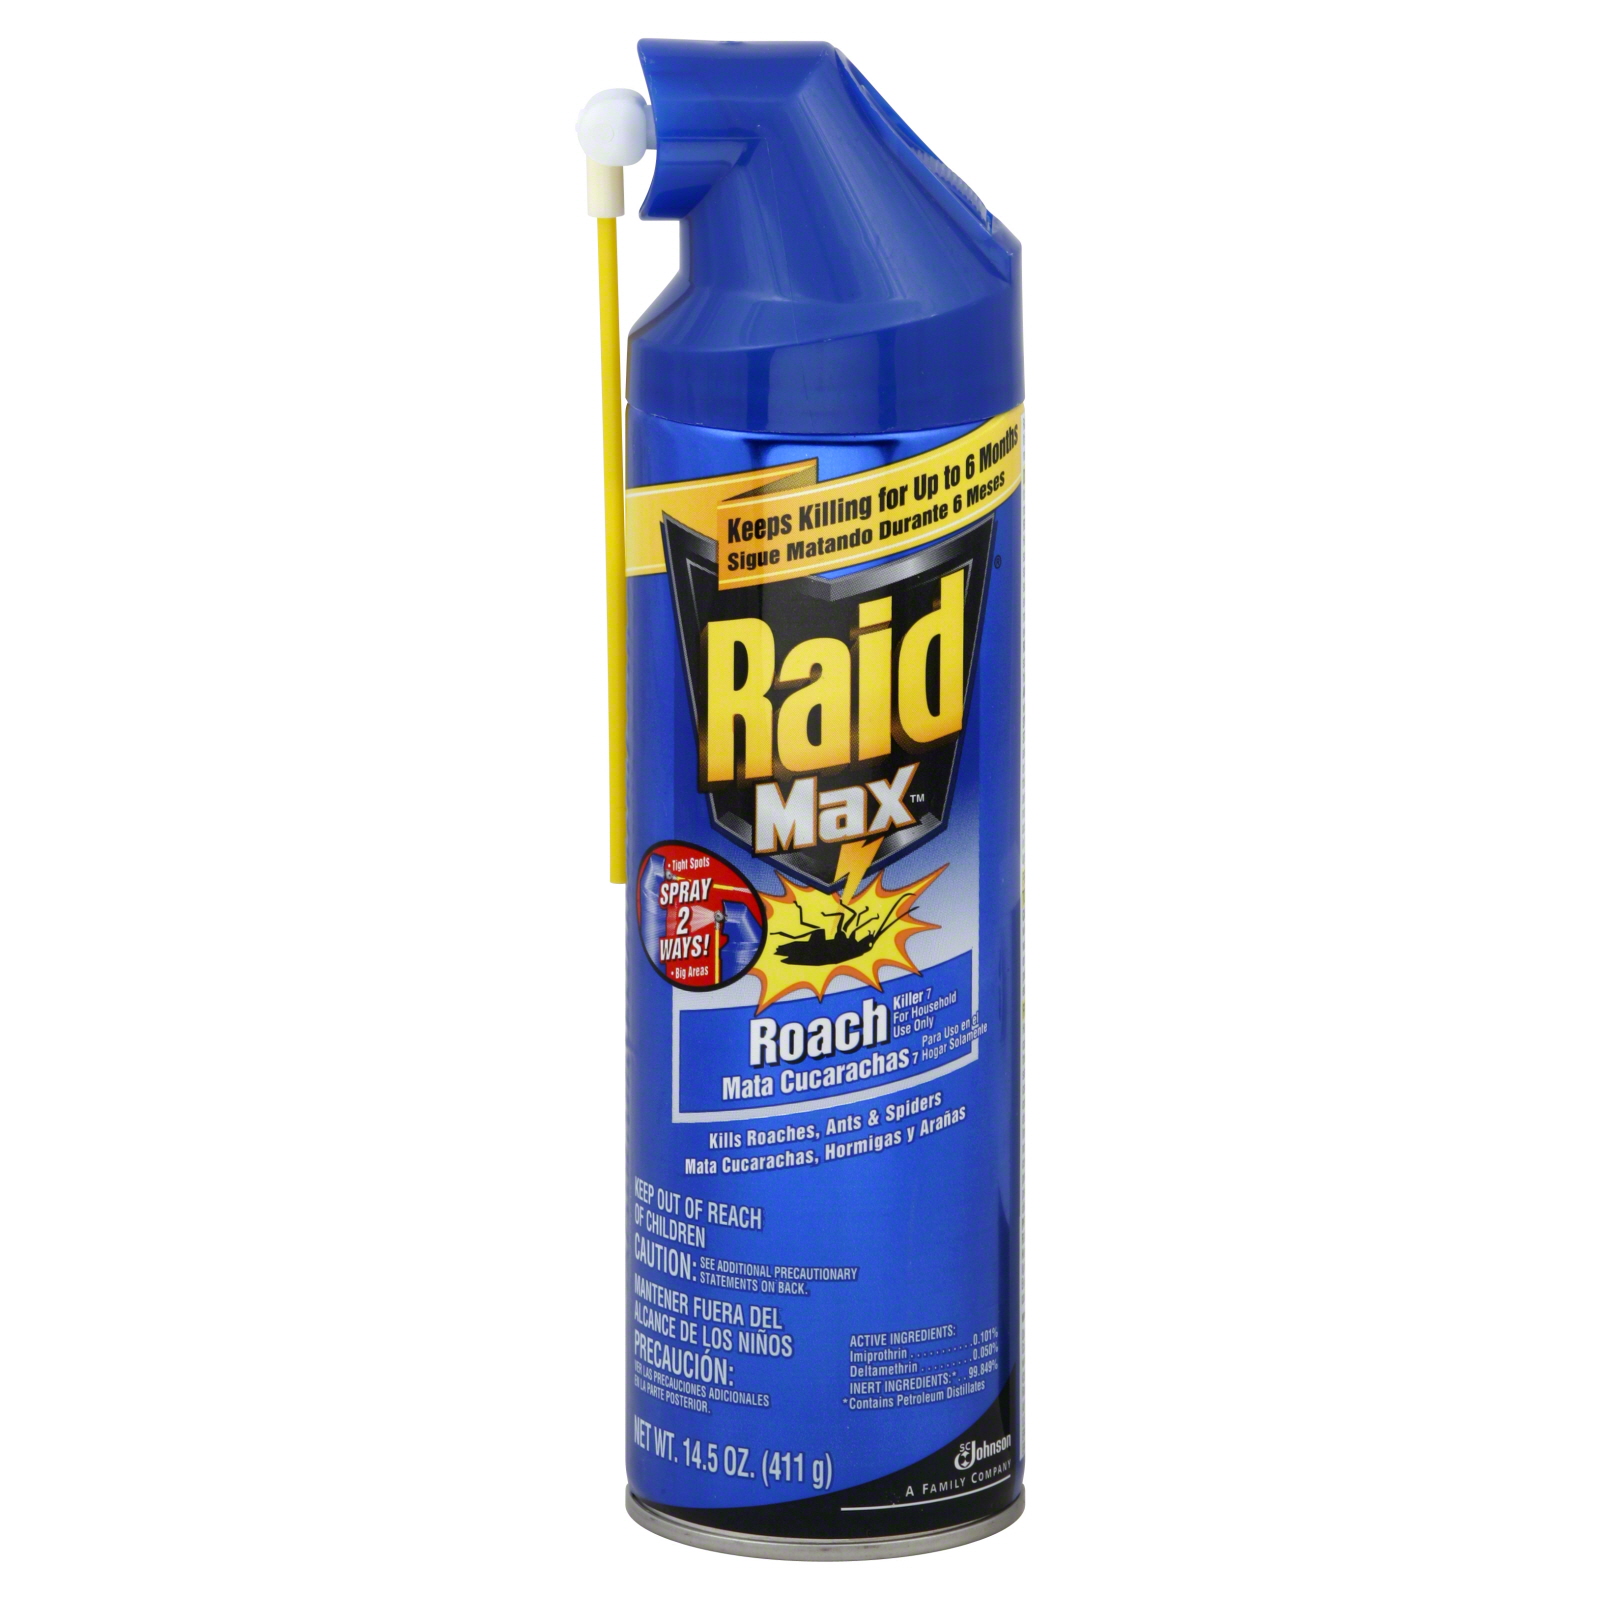 Raid Max Roach Killer 7, 14.5 oz (411 g)